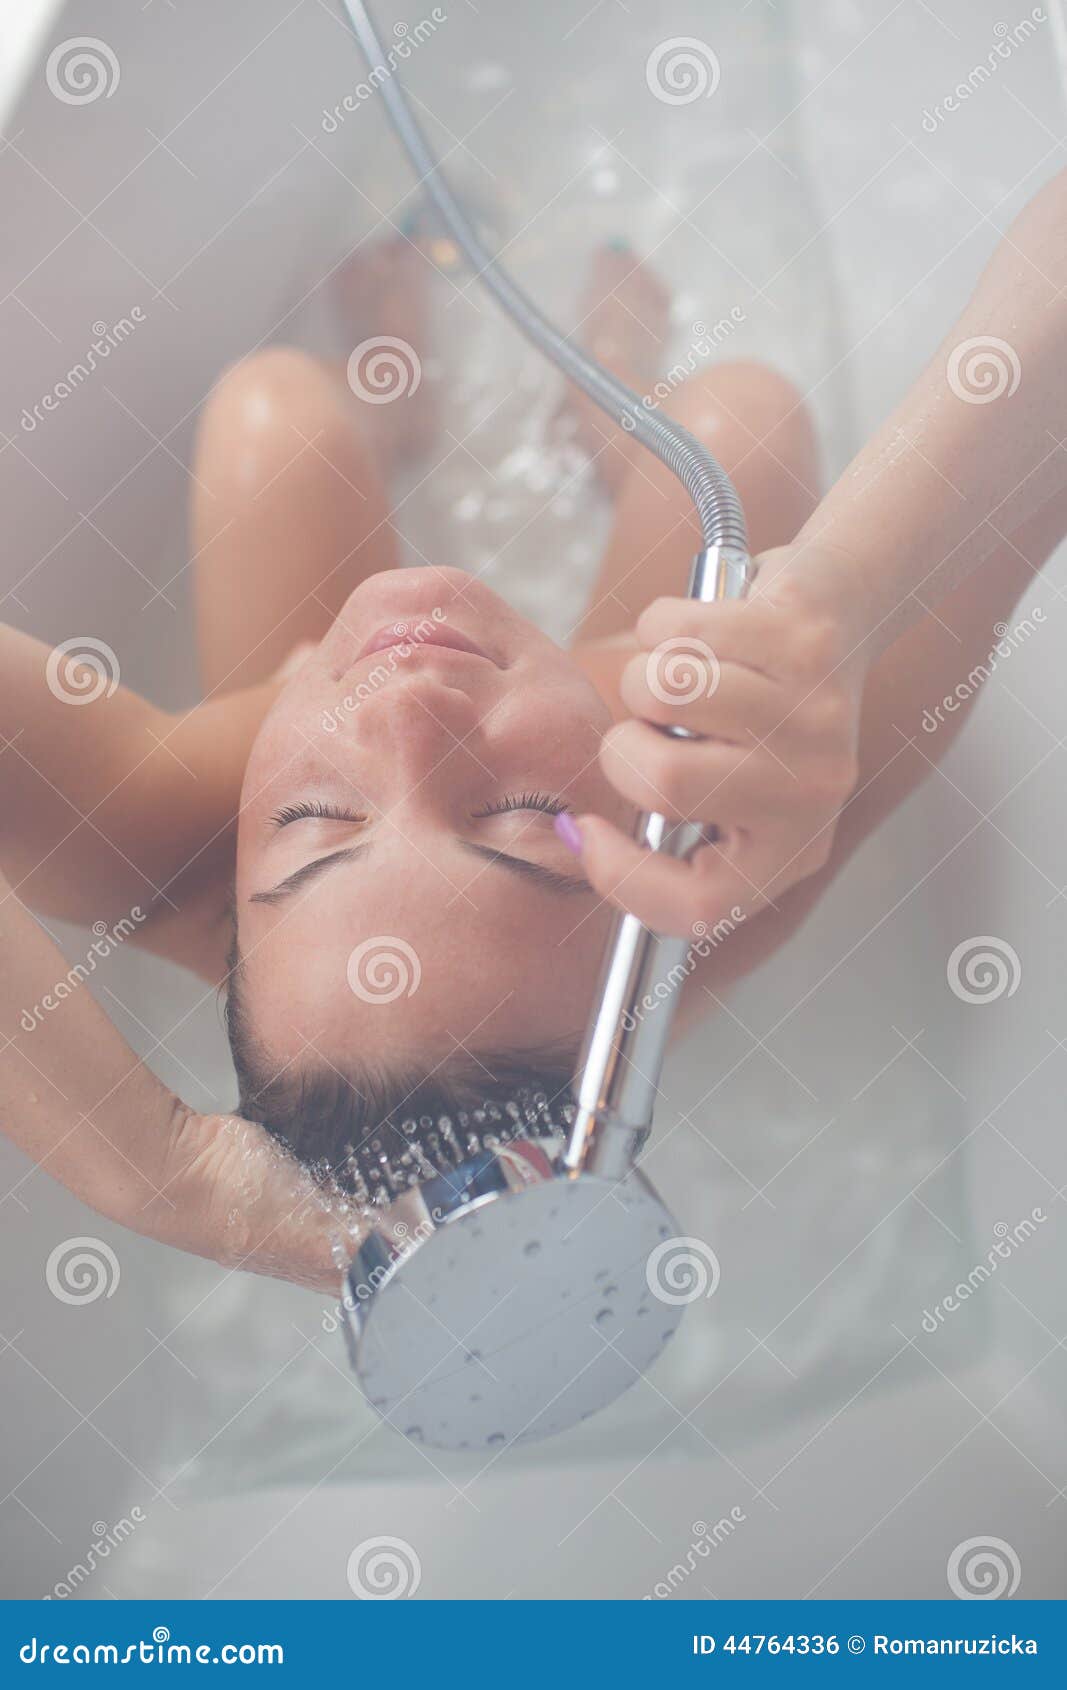 shower taking Hot girl